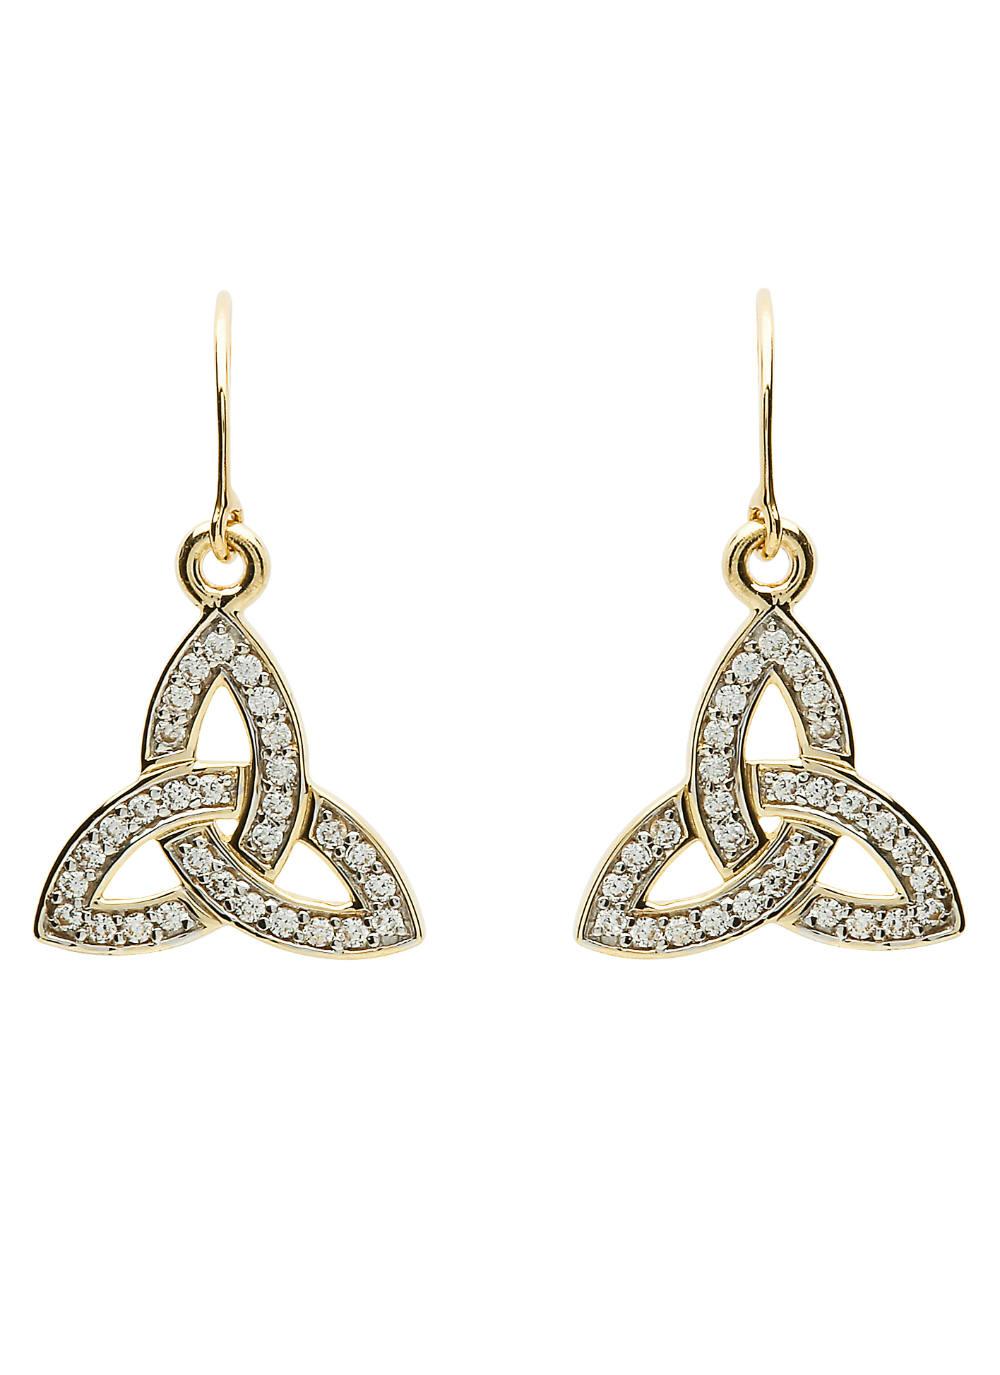 10K Gold Trinity Knot Stone Set Drop Earrings | Blarney